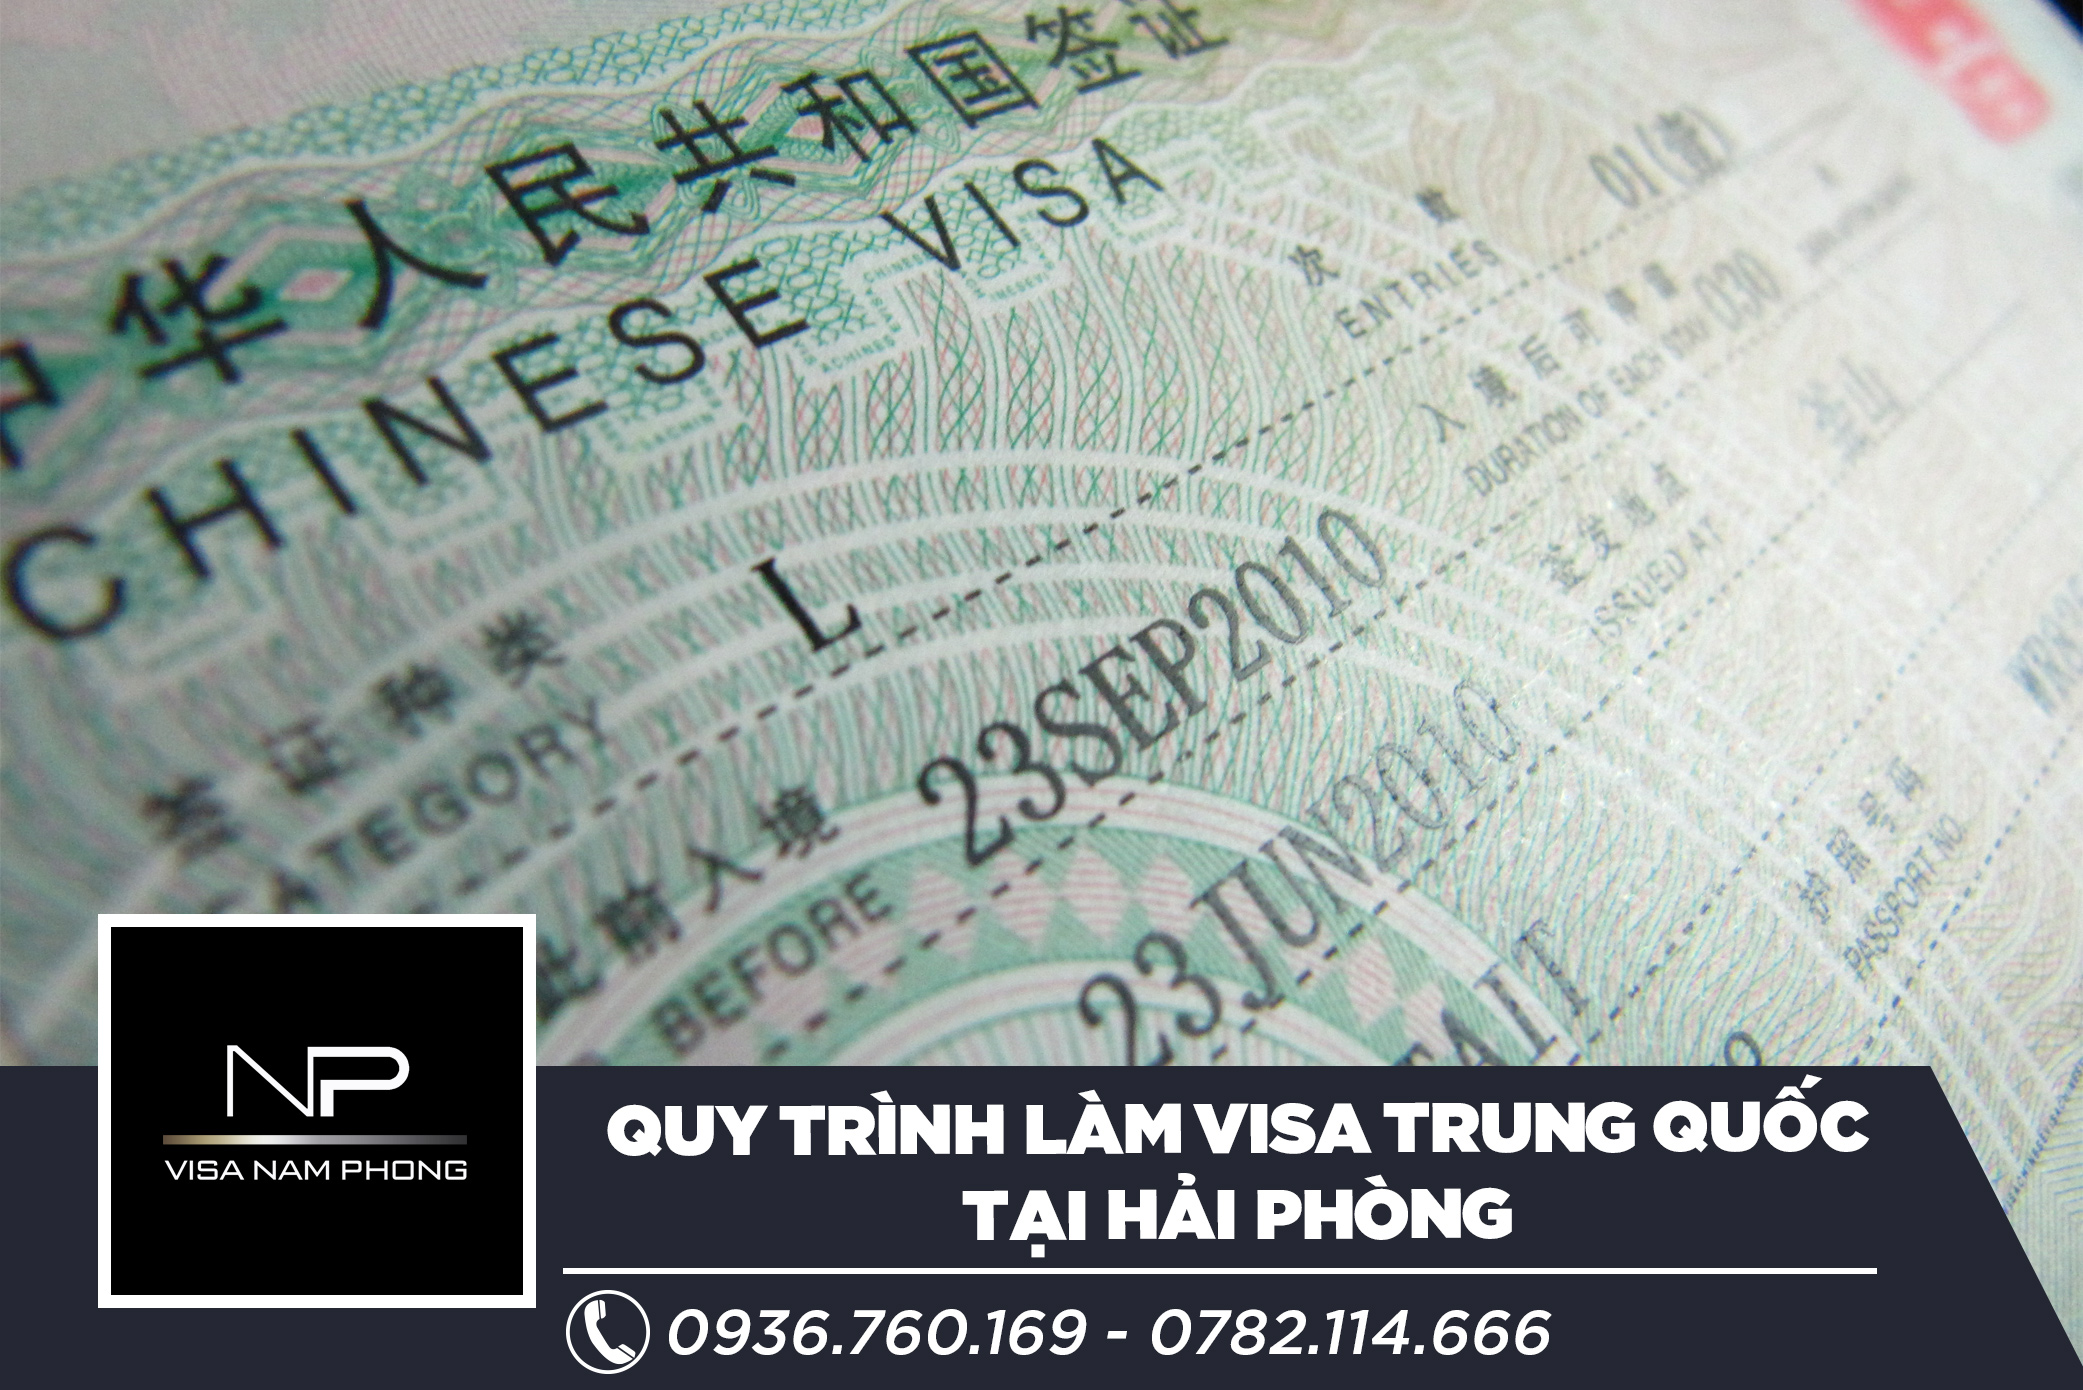 Quy trình làm visa Trung Quốc tại Hải Phòng